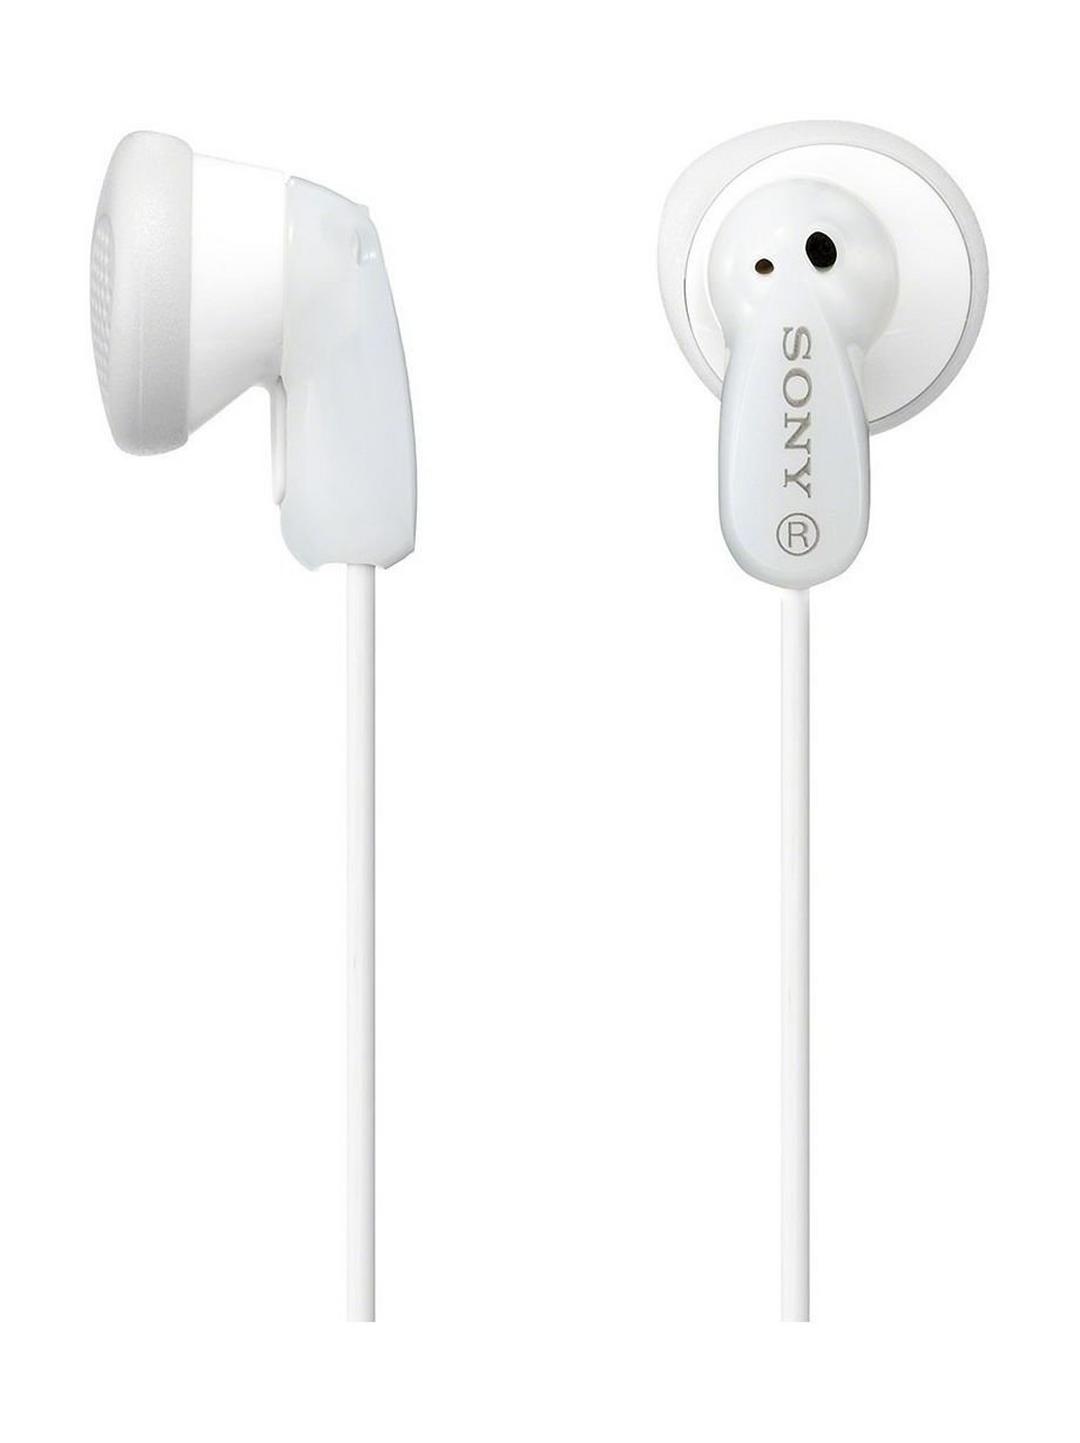 Sony E Series In-ear Headphones (MDR-E9LP) - White